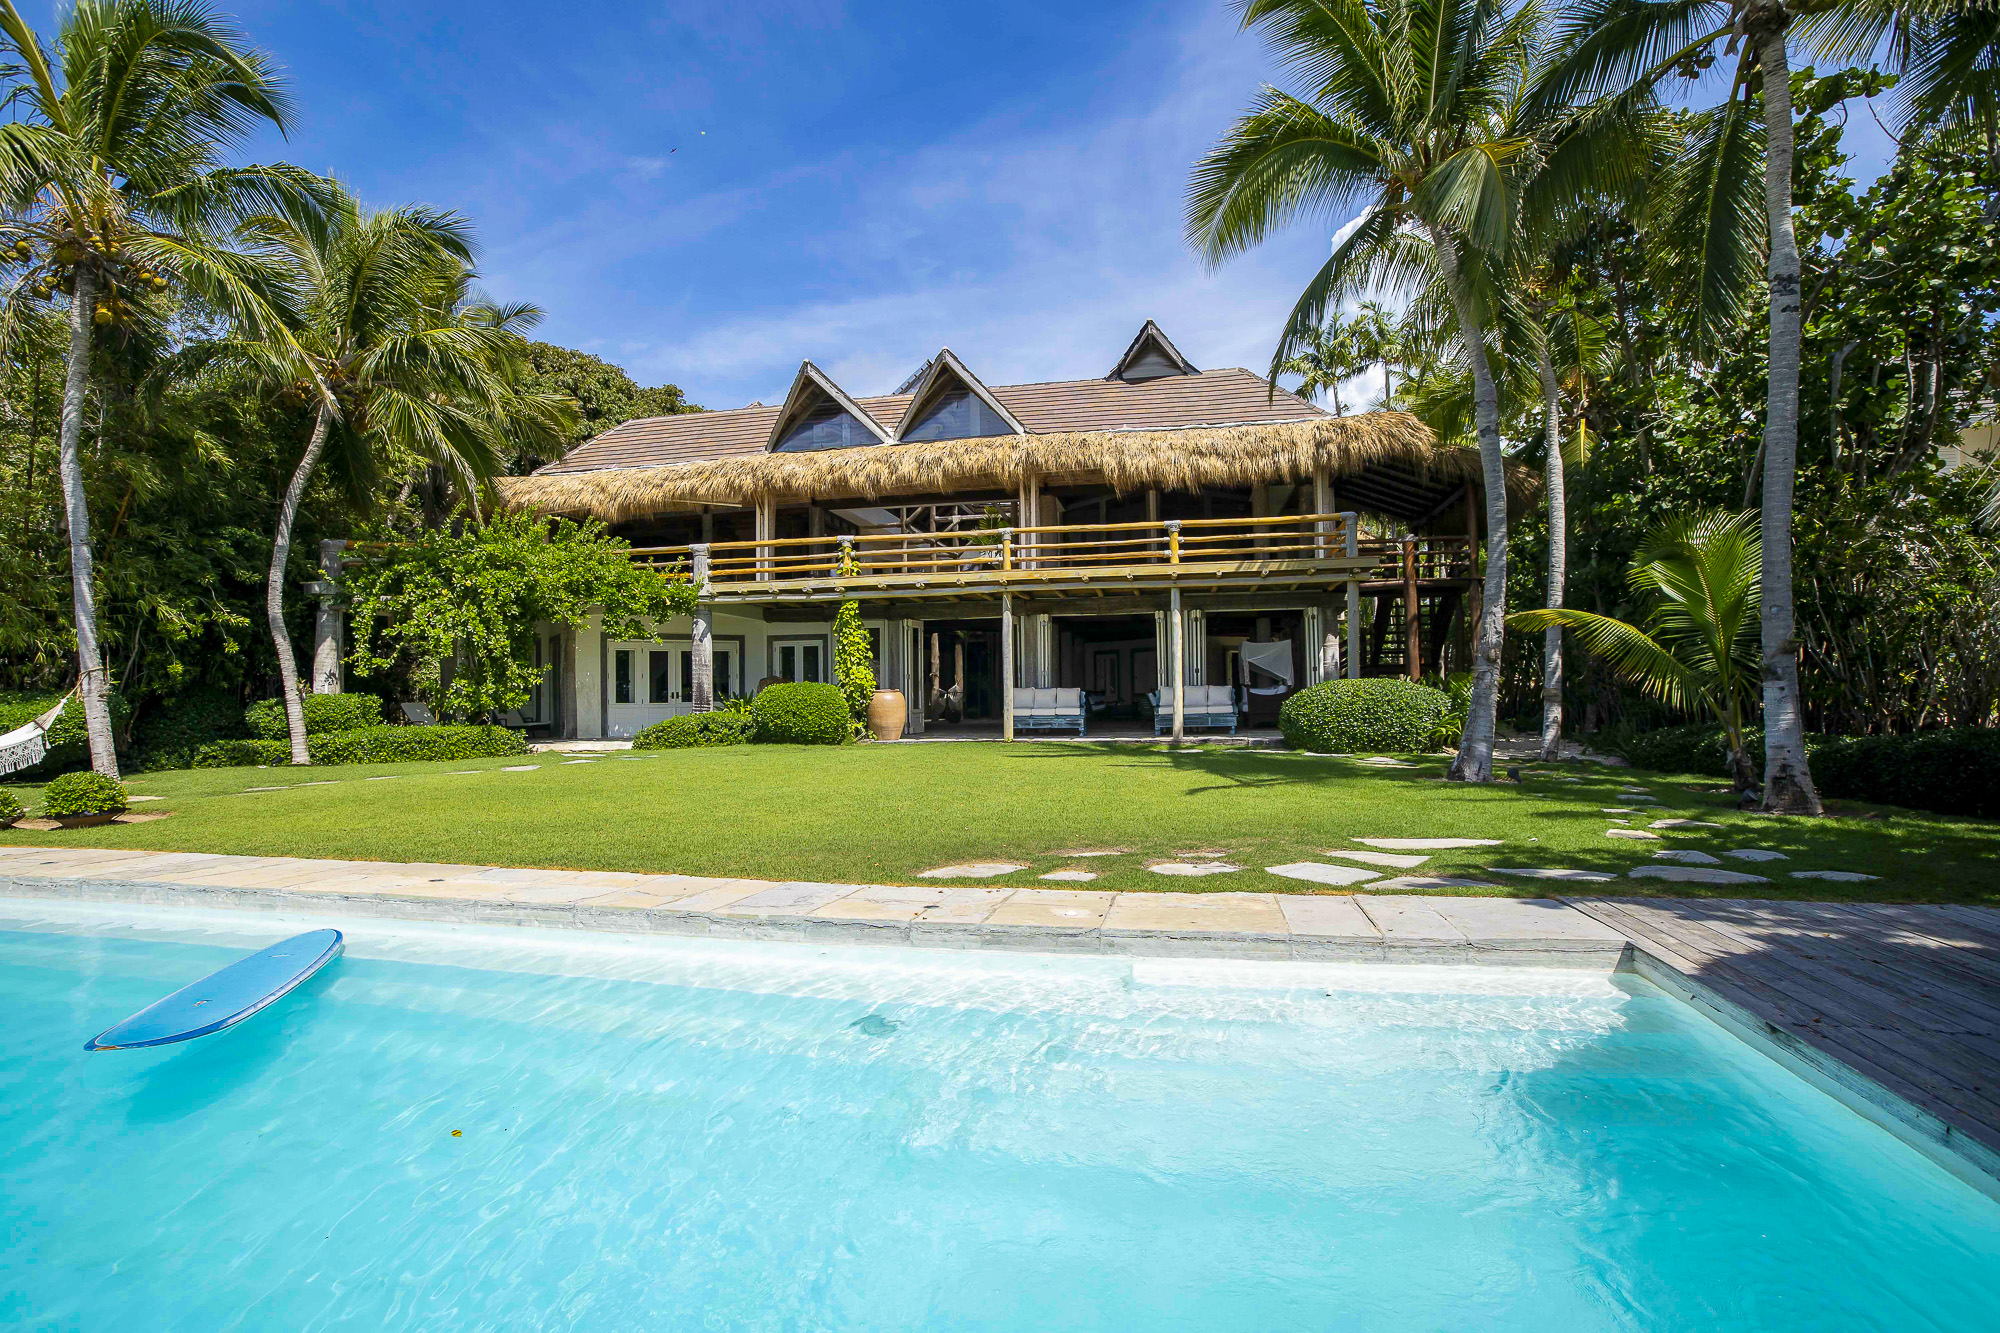 Exquisite Oceanfront Villa in the marina of Puntacana Resort